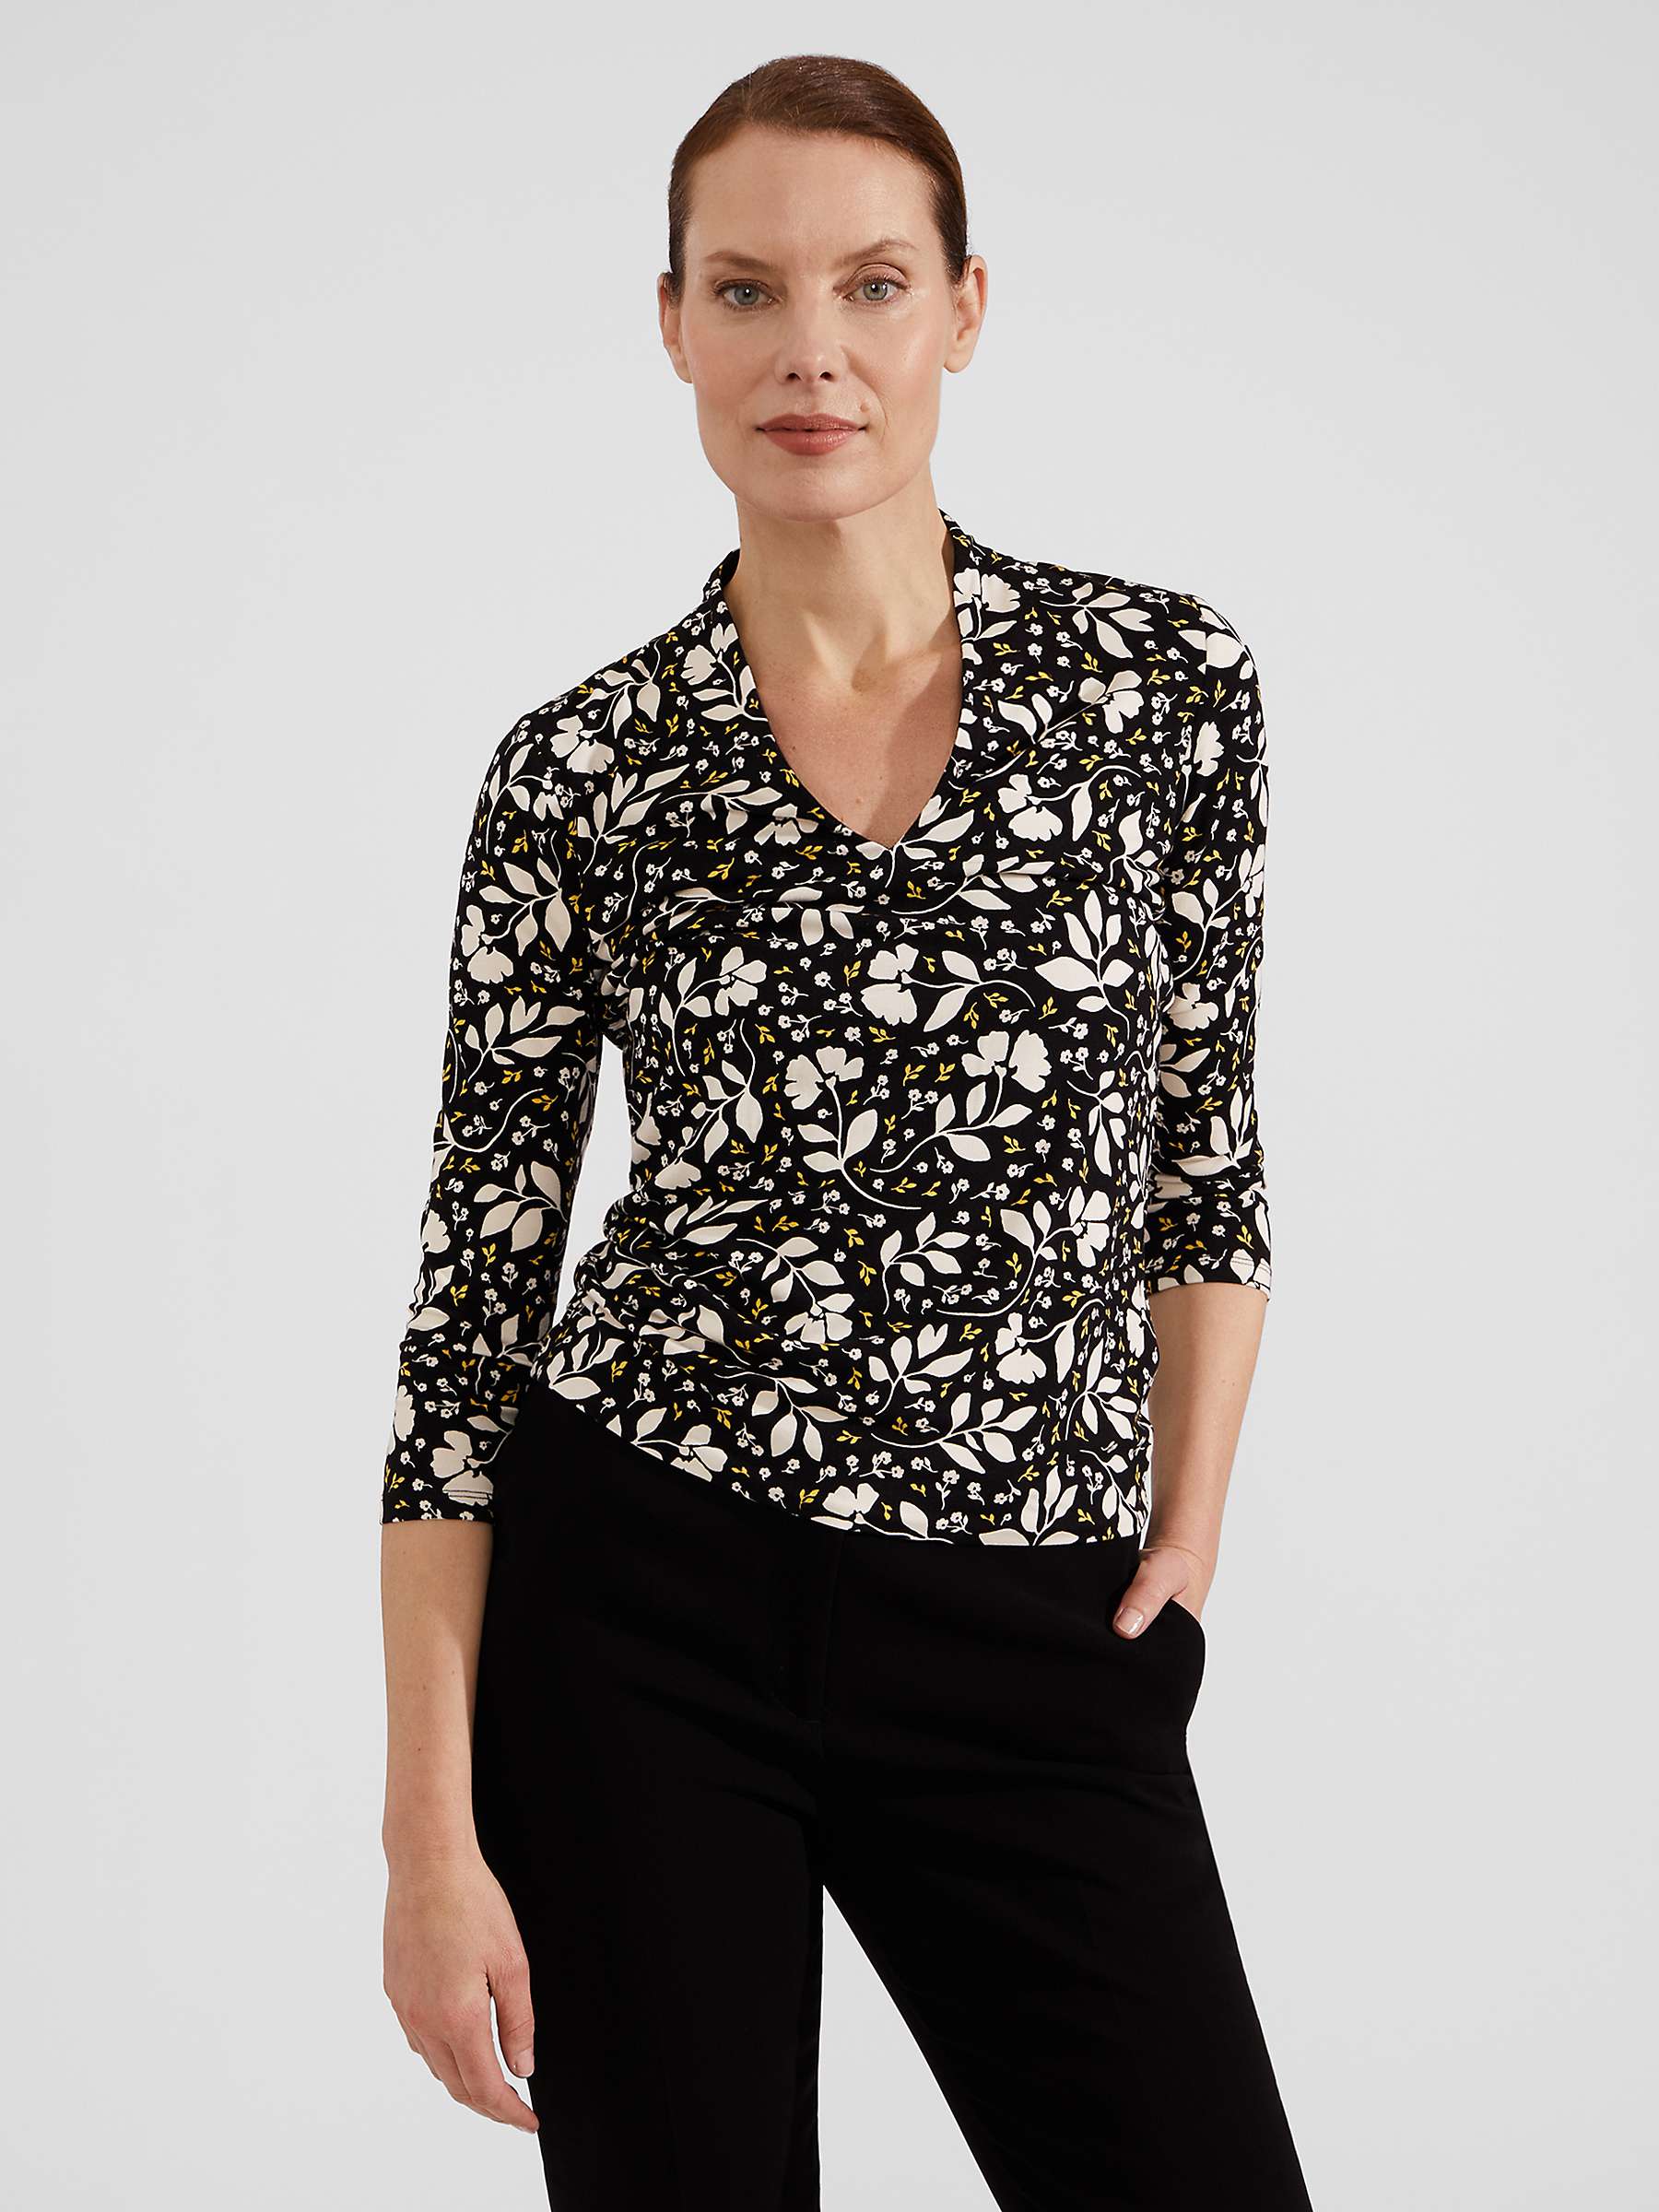 Buy Hobbs Aimee Floral Print Jersey Top, Black/Multi Online at johnlewis.com